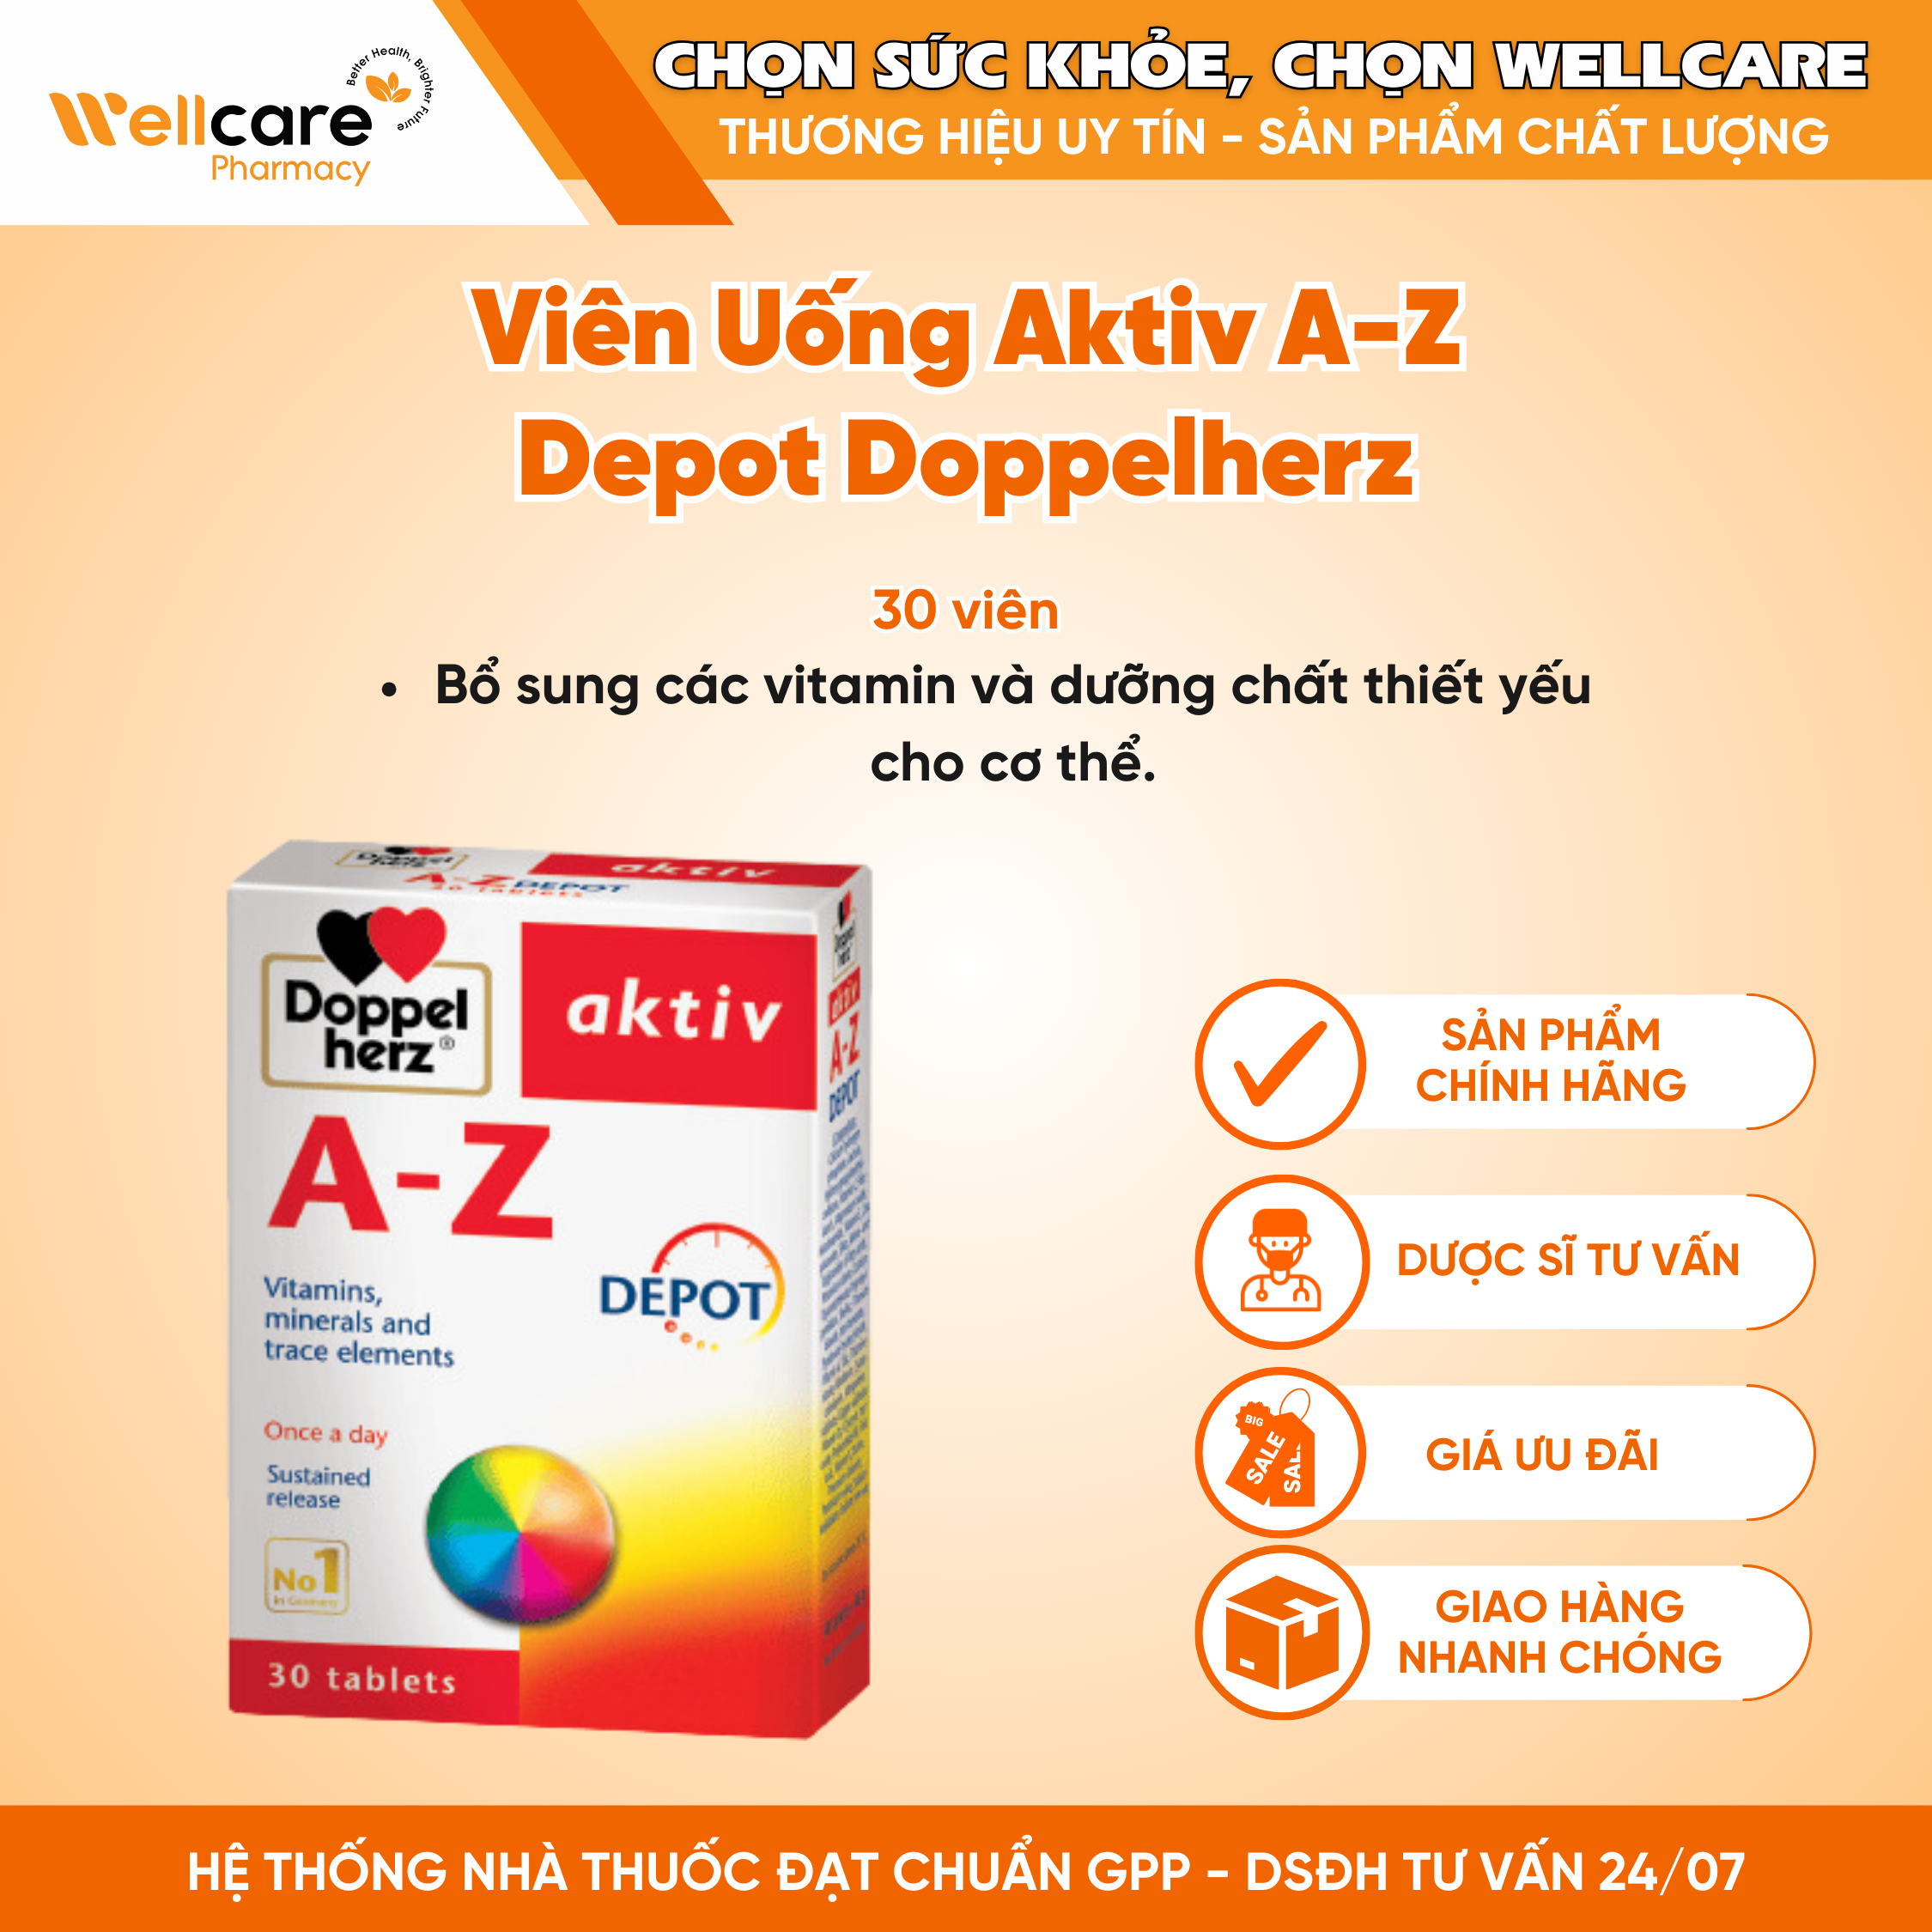 Viên uống Aktiv A-Z Depot Doppelherz – Bổ sung vitamin và khoáng chất (Hộp 3 vỉ x 10 viên)